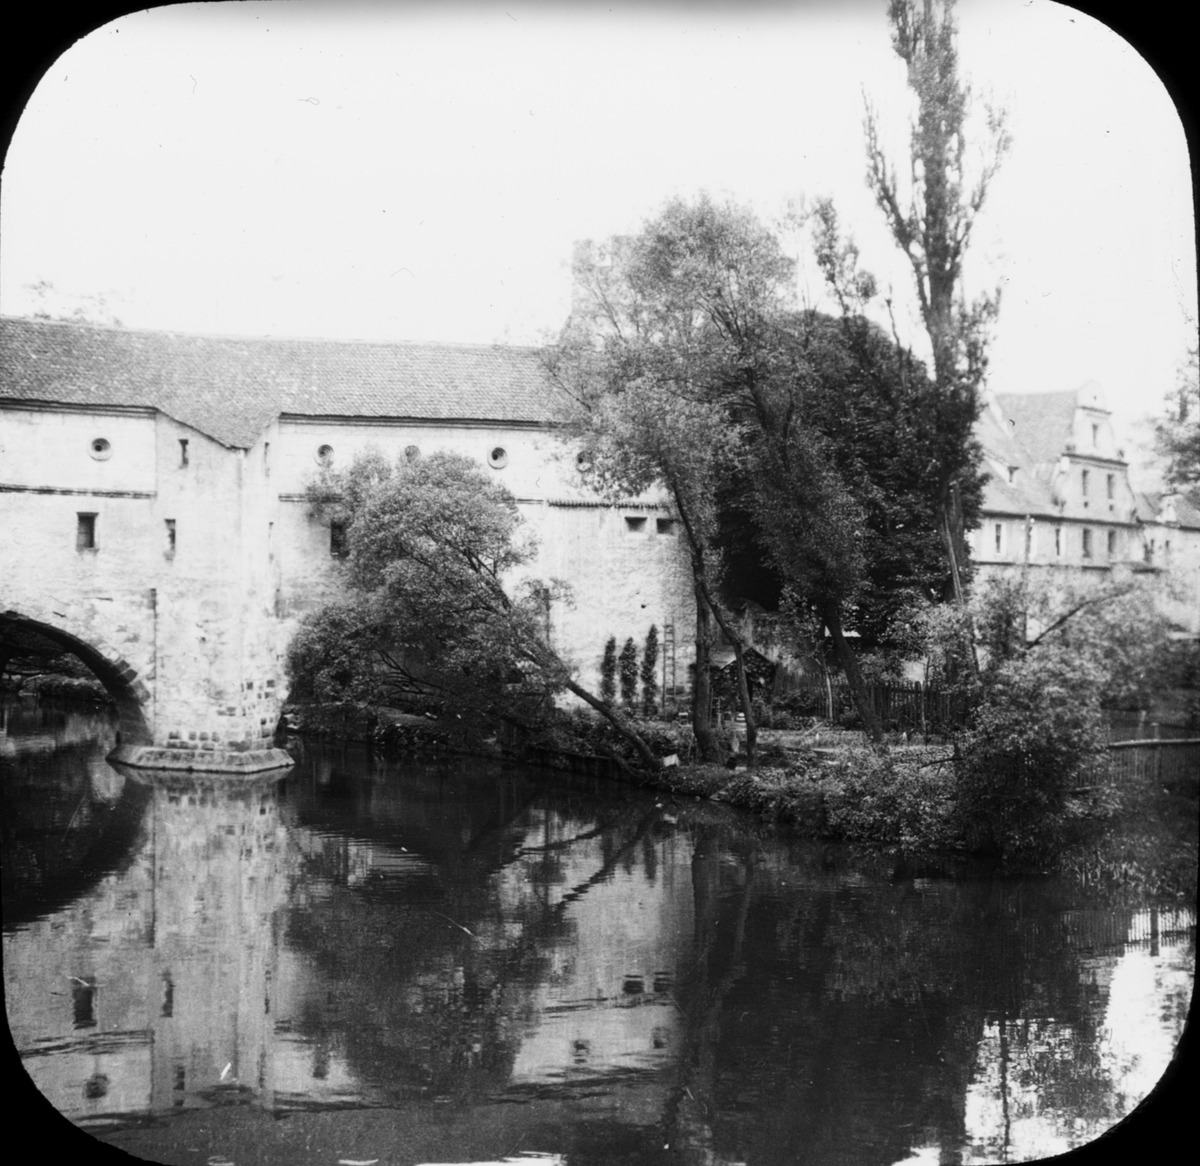 Skioptikonbild med motiv av bron Stadtbrille i stadsmuren Amberg.
Bilden har förvarats i kartong märkt: Bamberg 7. Amberg 3.